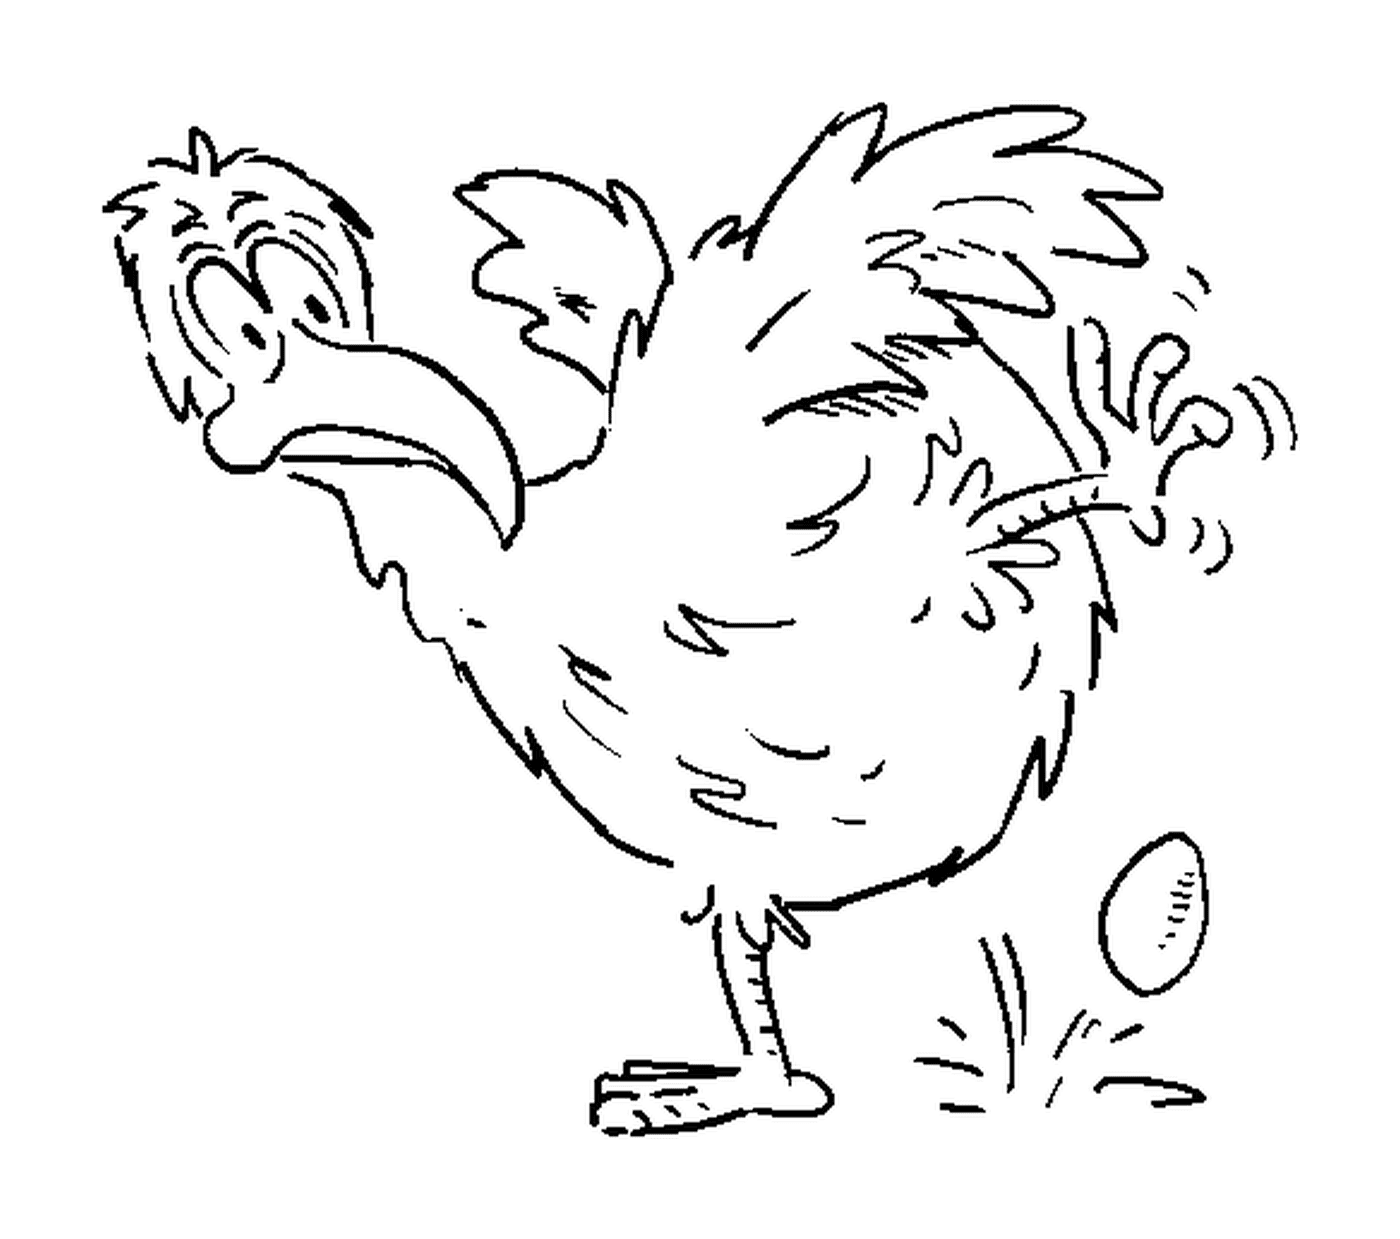  Eierlegende Hühner 